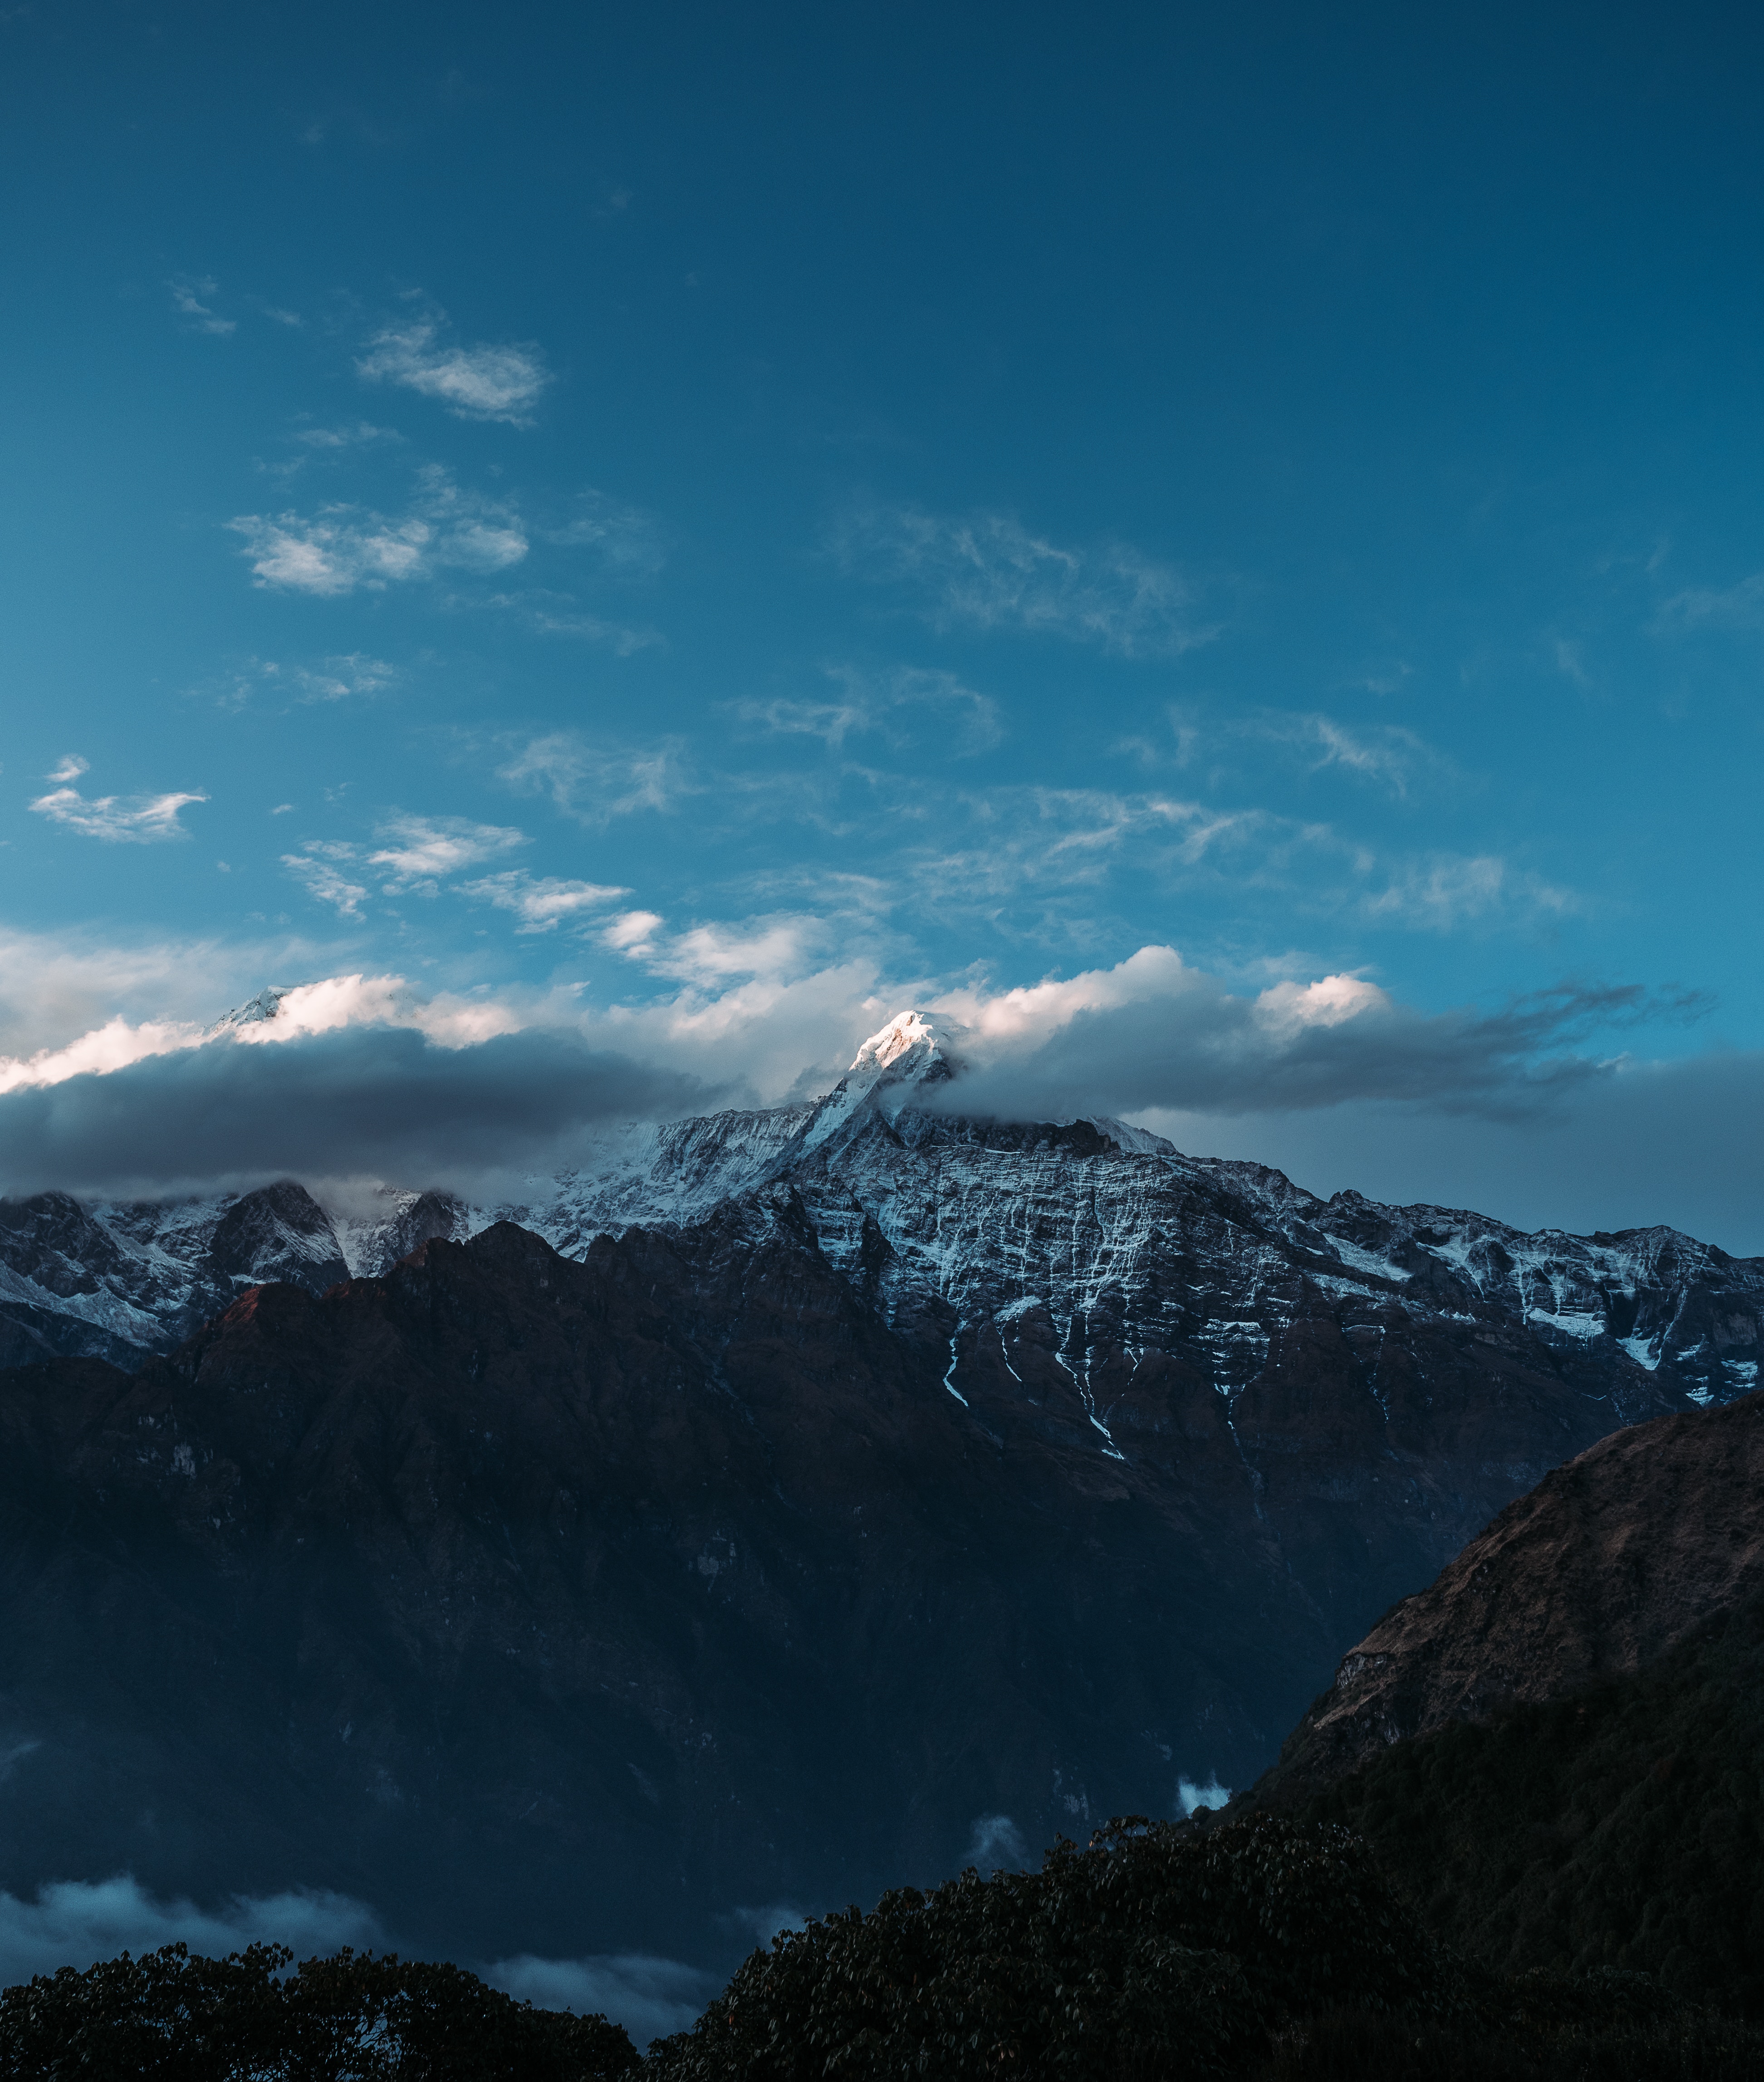 himalayas, mountains, clouds, nature, sky, vertex, tops